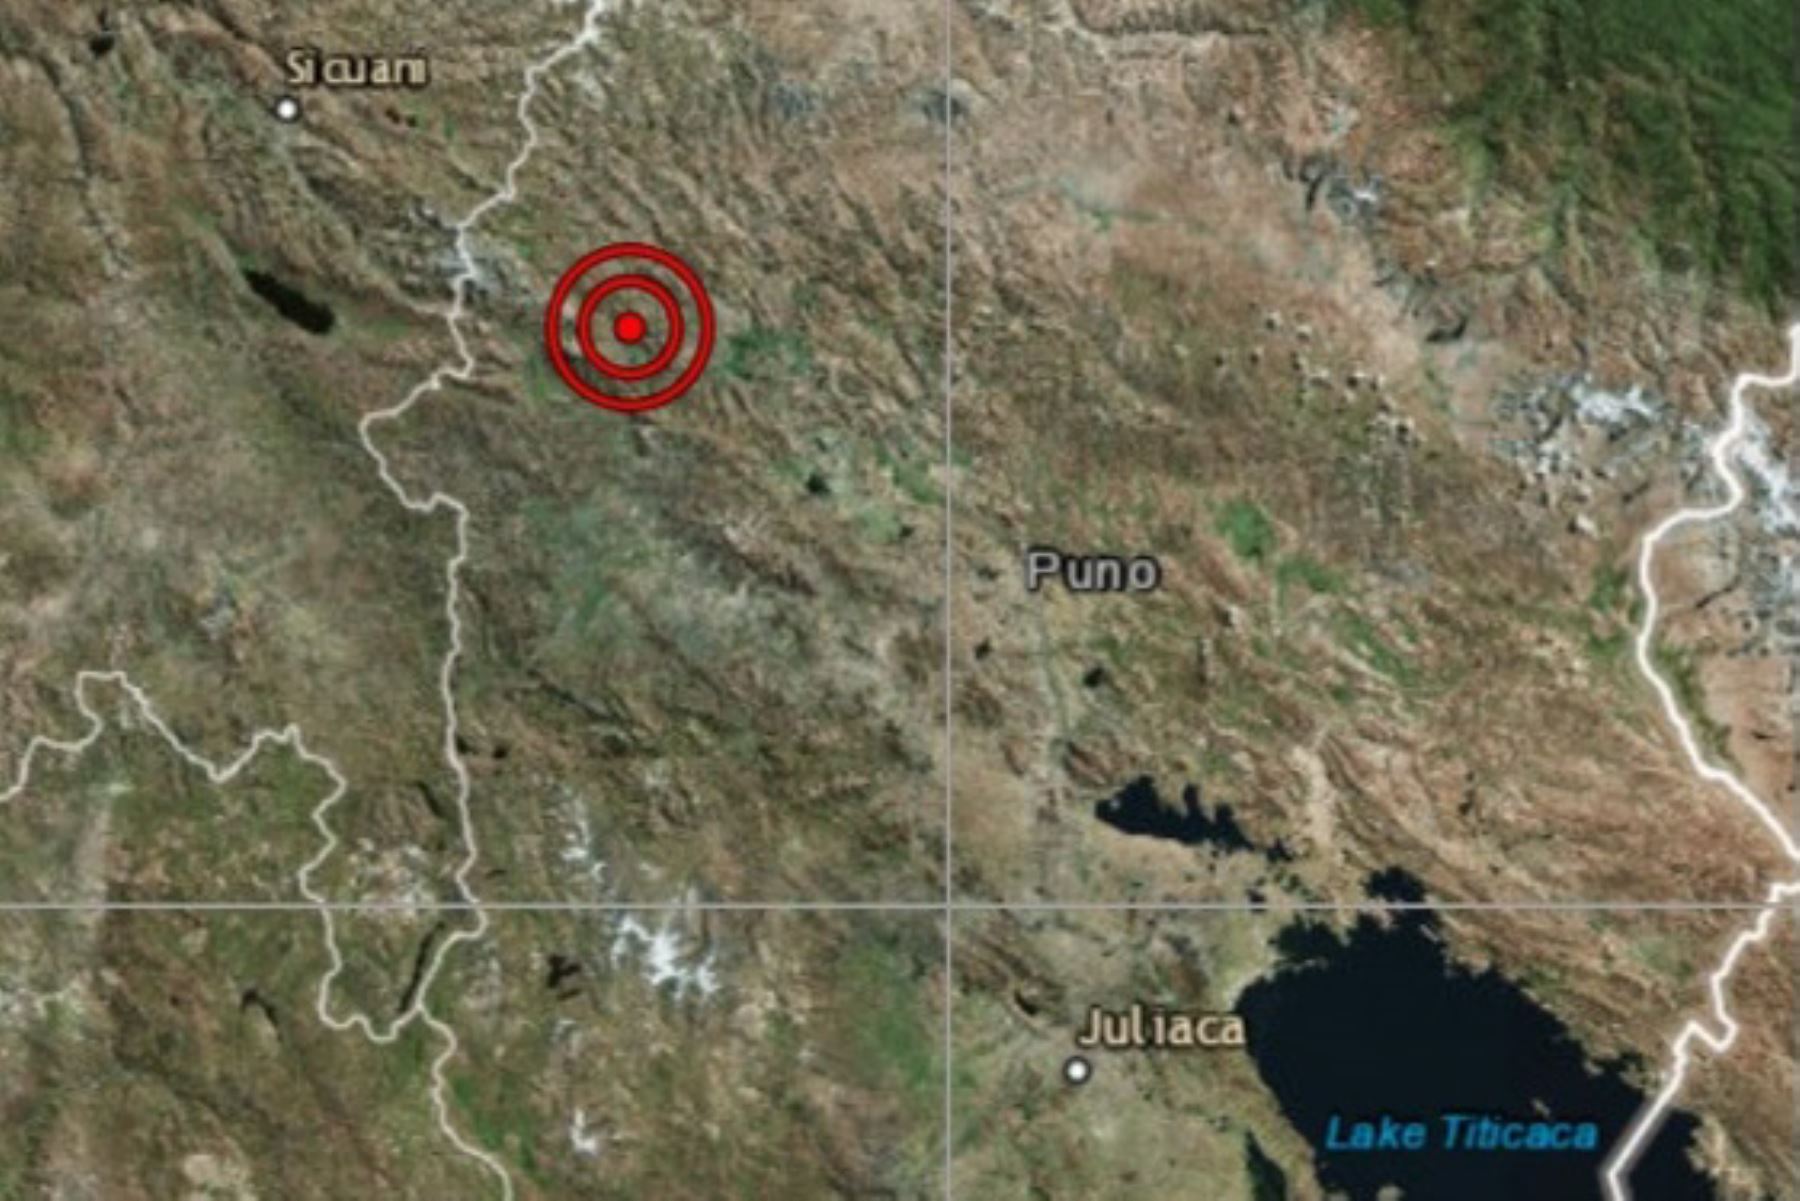 Sismo de magnitud 4.0 se registró esta mañana en la región Puno.